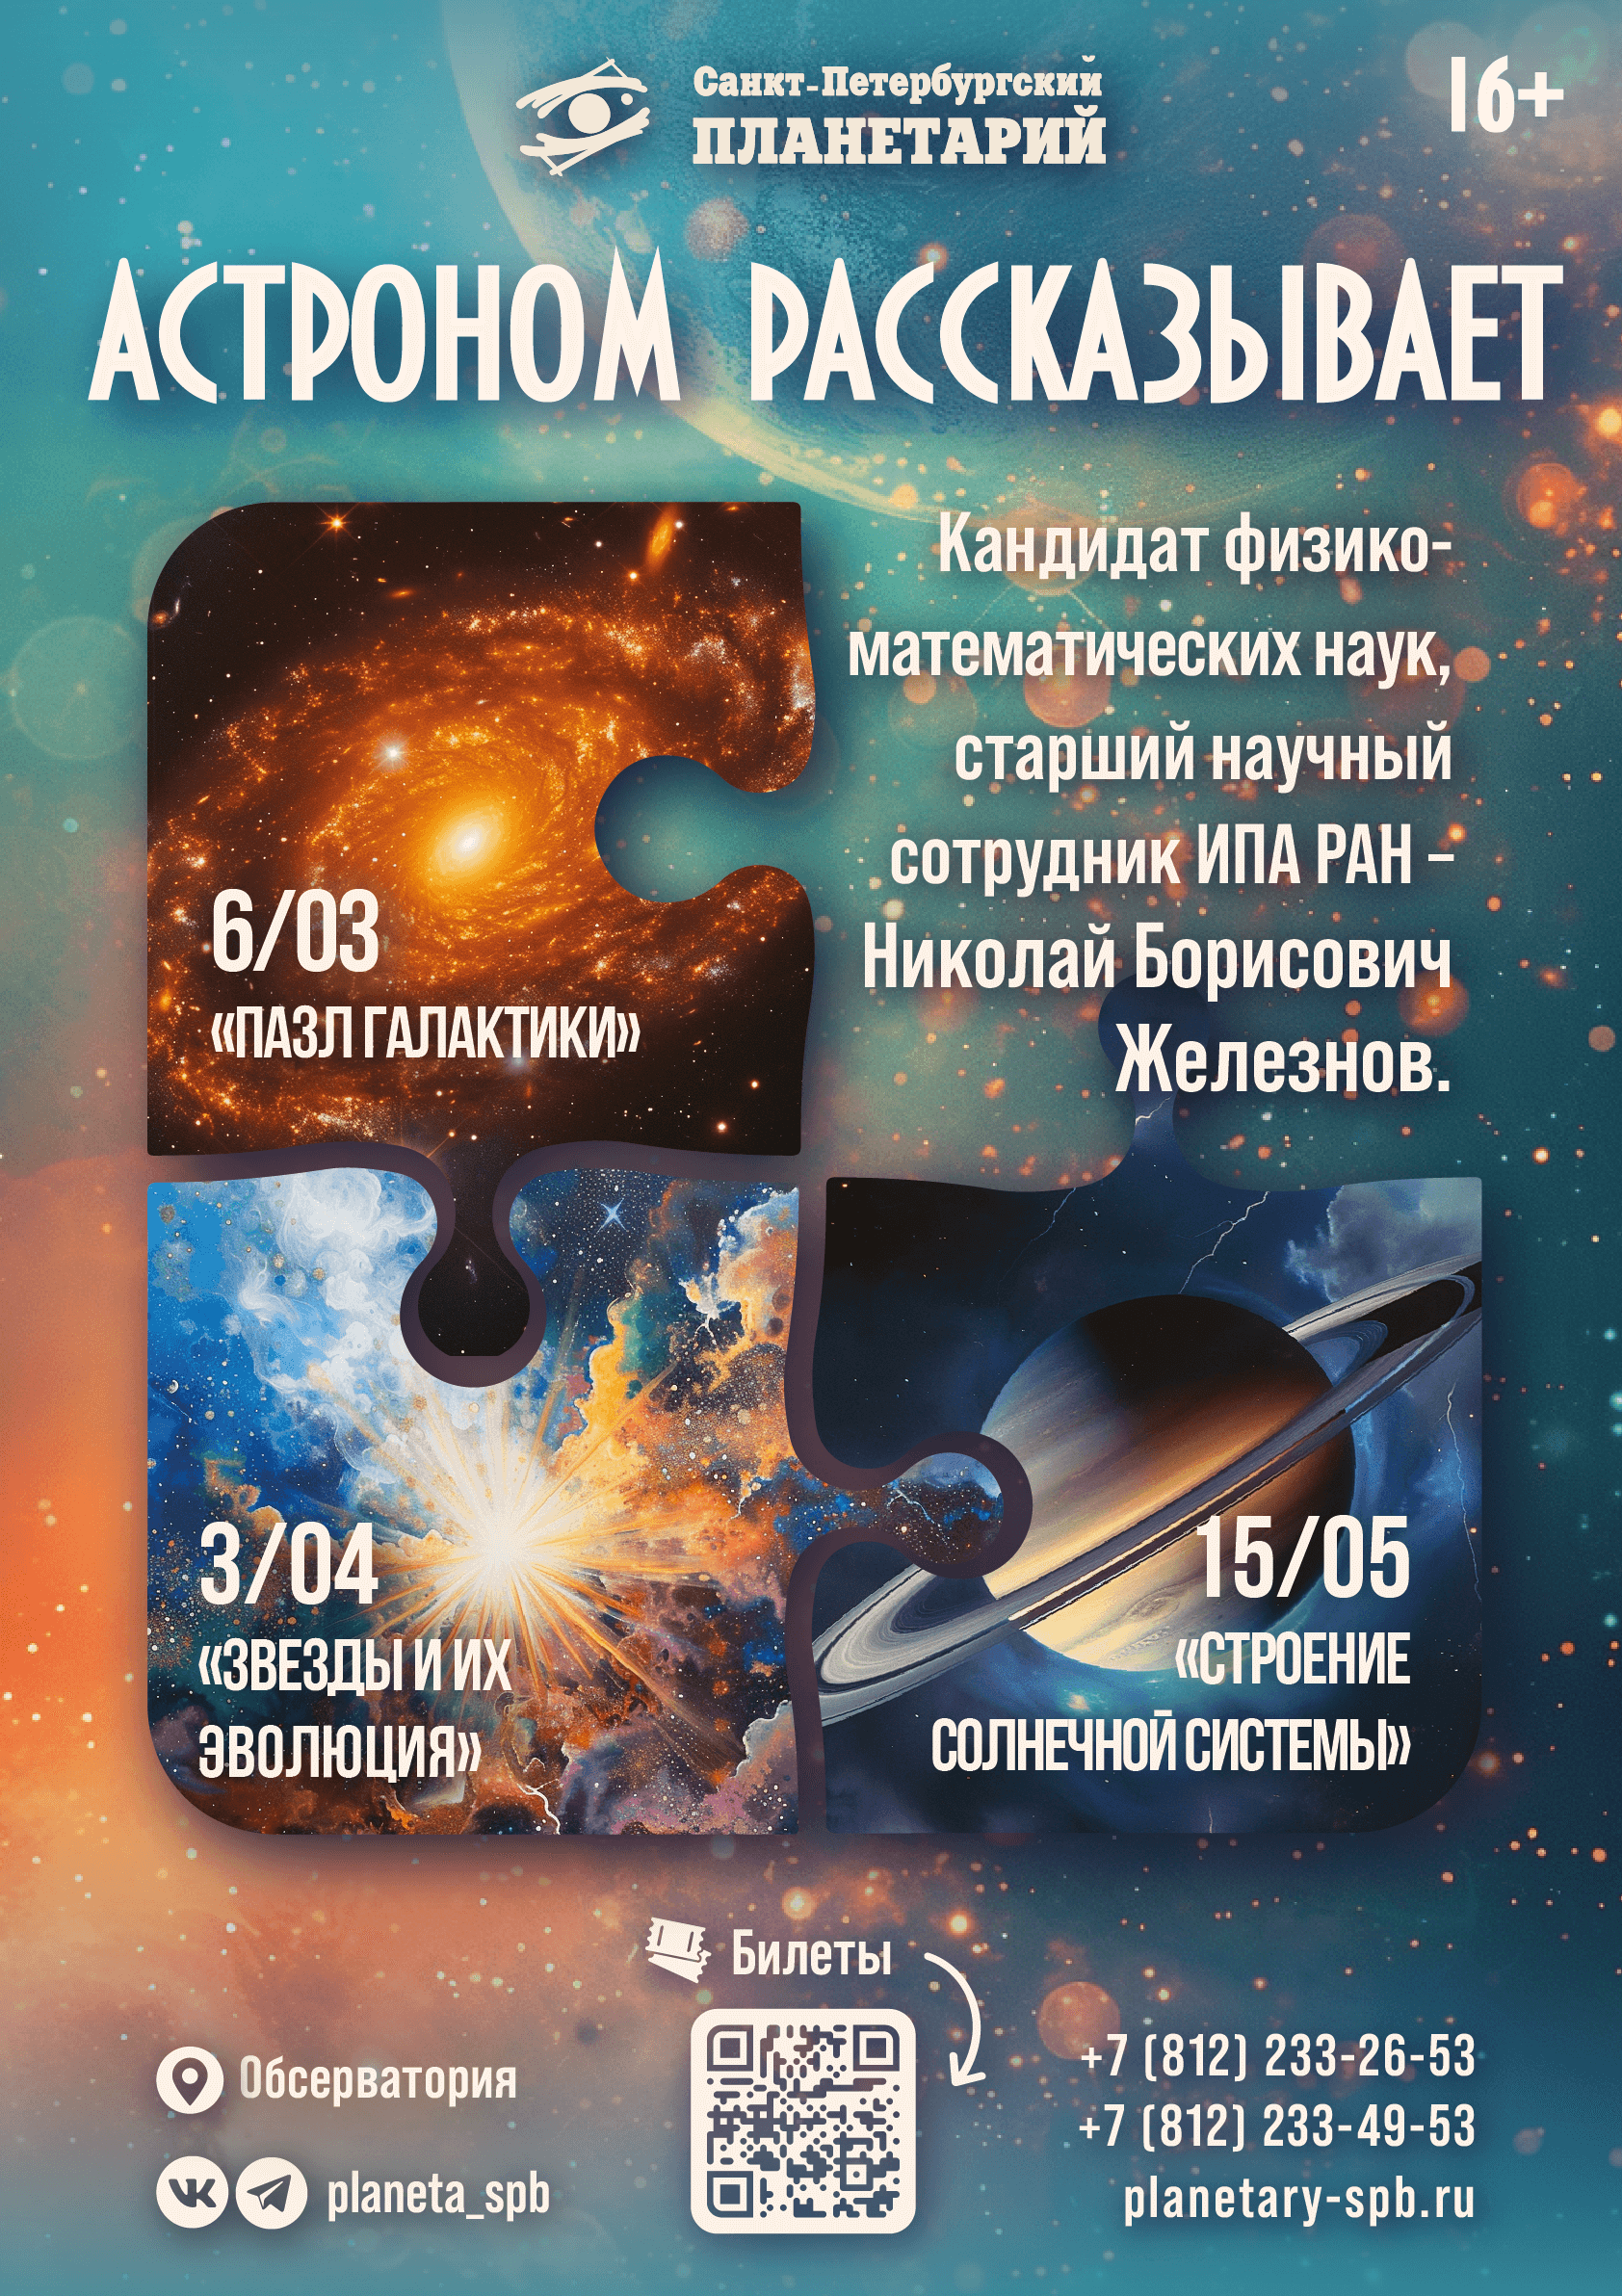 Санкт-Петербургский Планетарий приготовил новые программы в рамках проекта «Астроном рассказывает» (16+) 